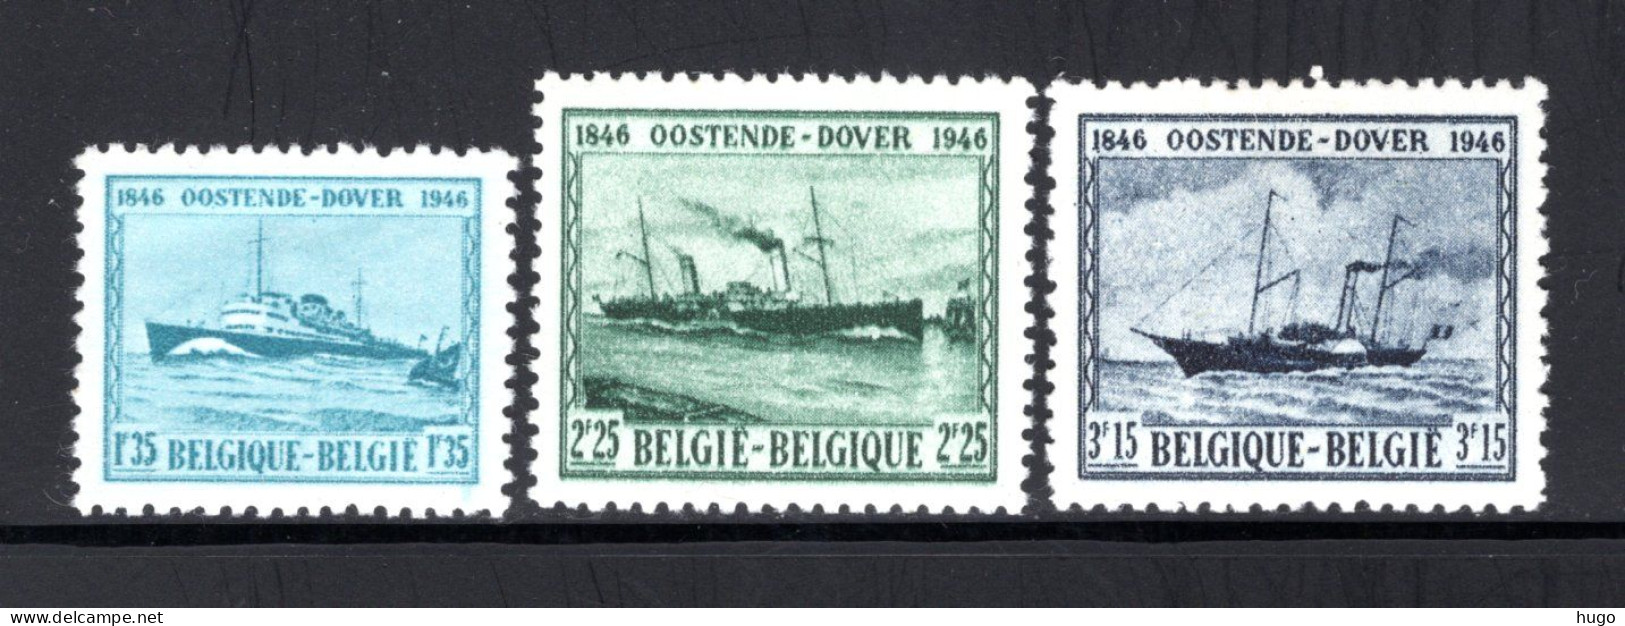 725/727 MNH 1946 - Eeuwfeest Van De Maildienst Oostende Dover. - Ungebraucht